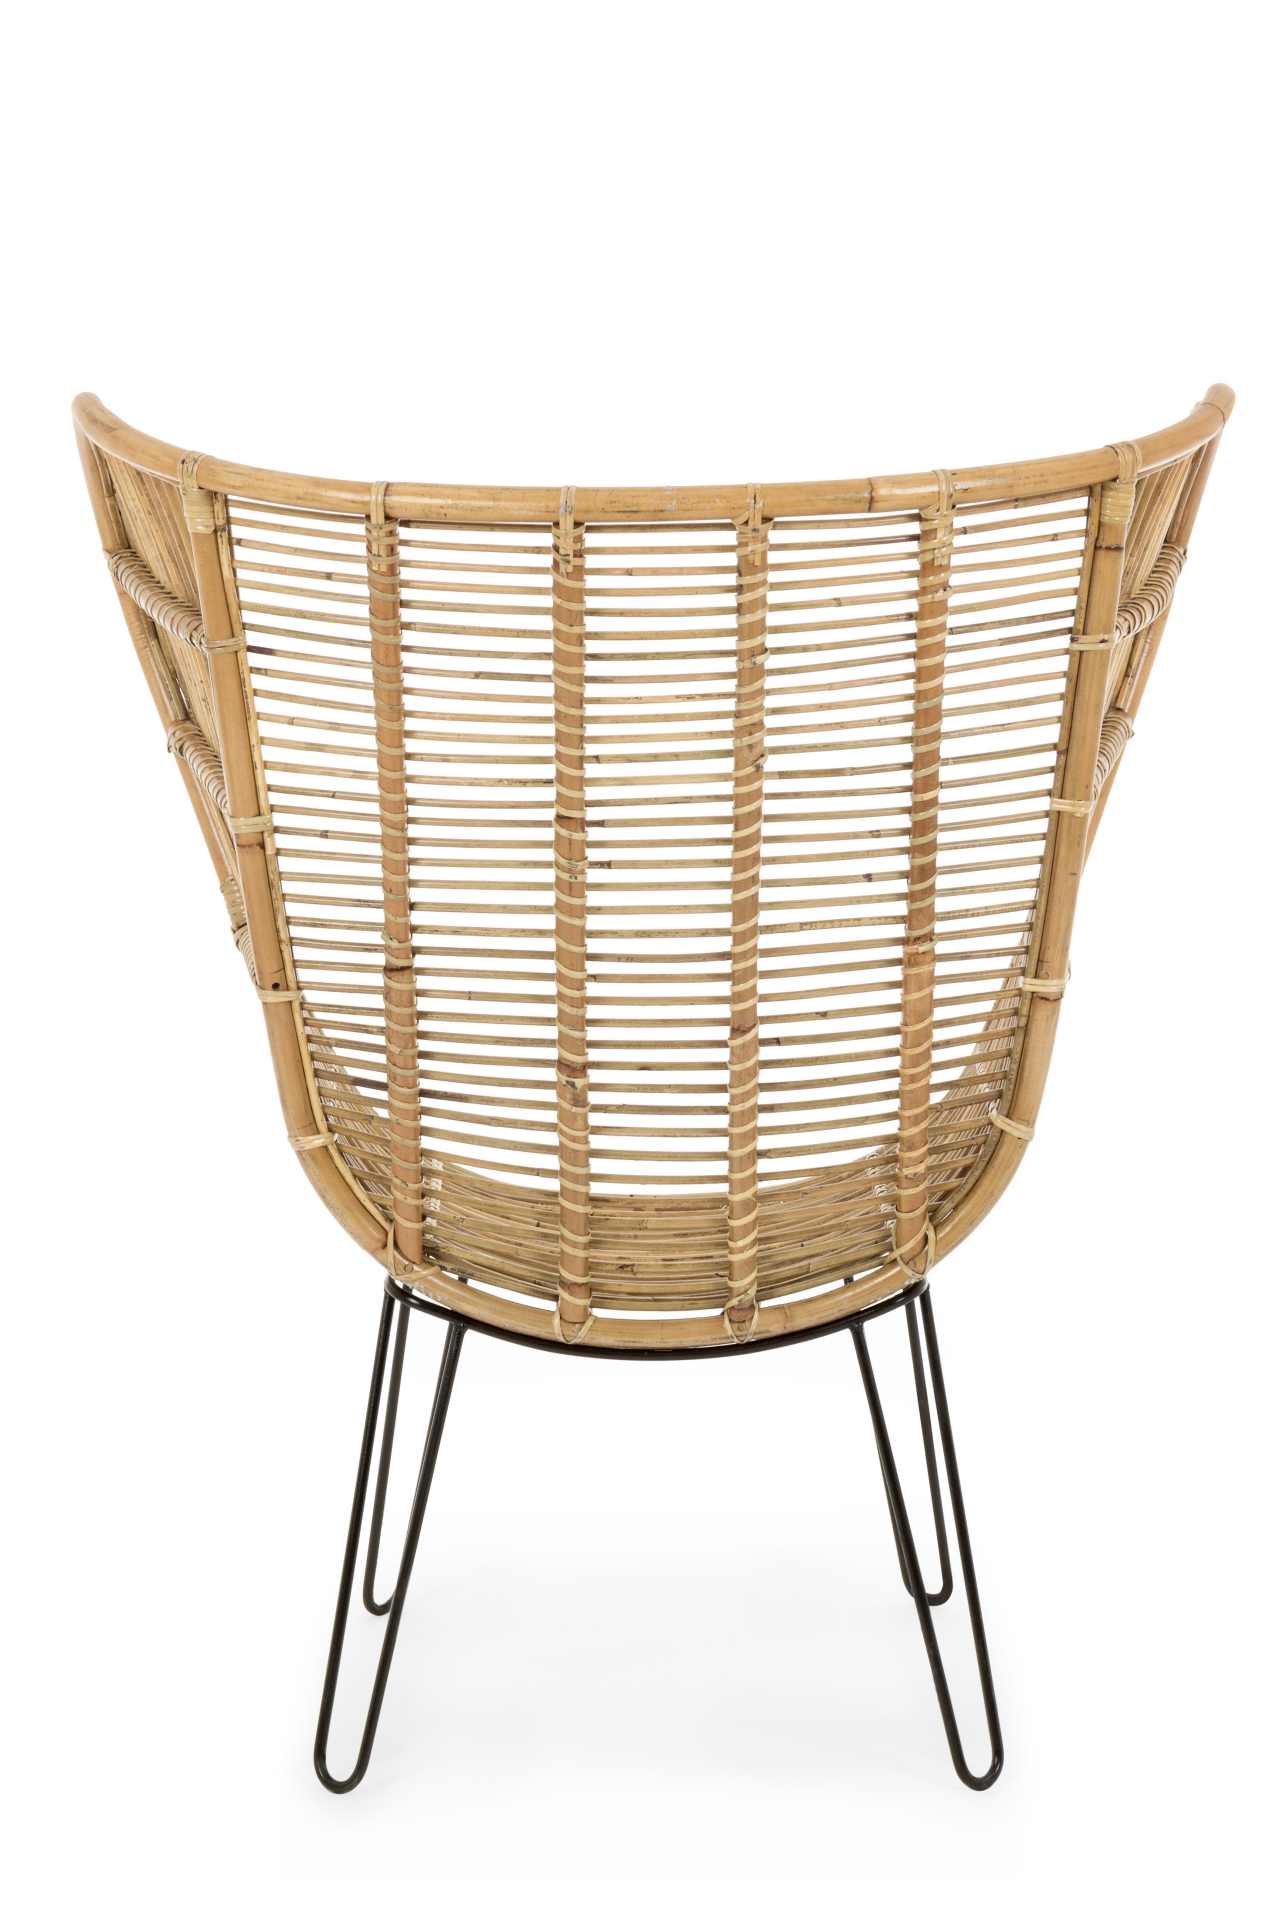 Der Sessel Estefan überzeugt mit seinem klassischen Design. Gefertigt wurde er aus Rattan, welches einen natürlichen Farbton besitzt. Das Gestell ist aus Metall und hat eine schwarze Farbe. Der Sessel besitzt eine Sitzhöhe von 42 cm. Die Breite beträgt 10